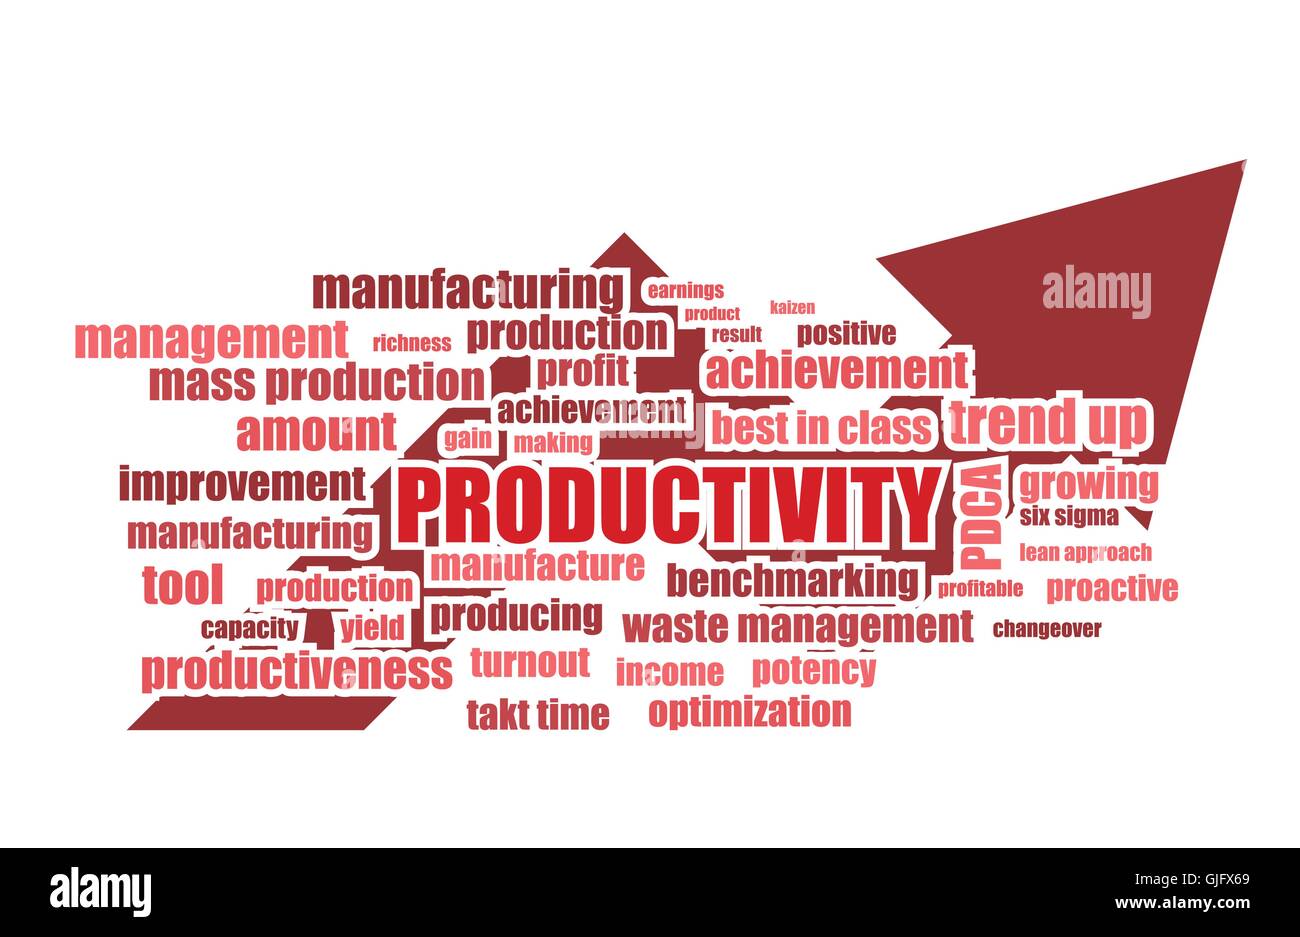 Produktivität verwandte Wörter manufacturing abstrakt Vektor-illustration Stock Vektor